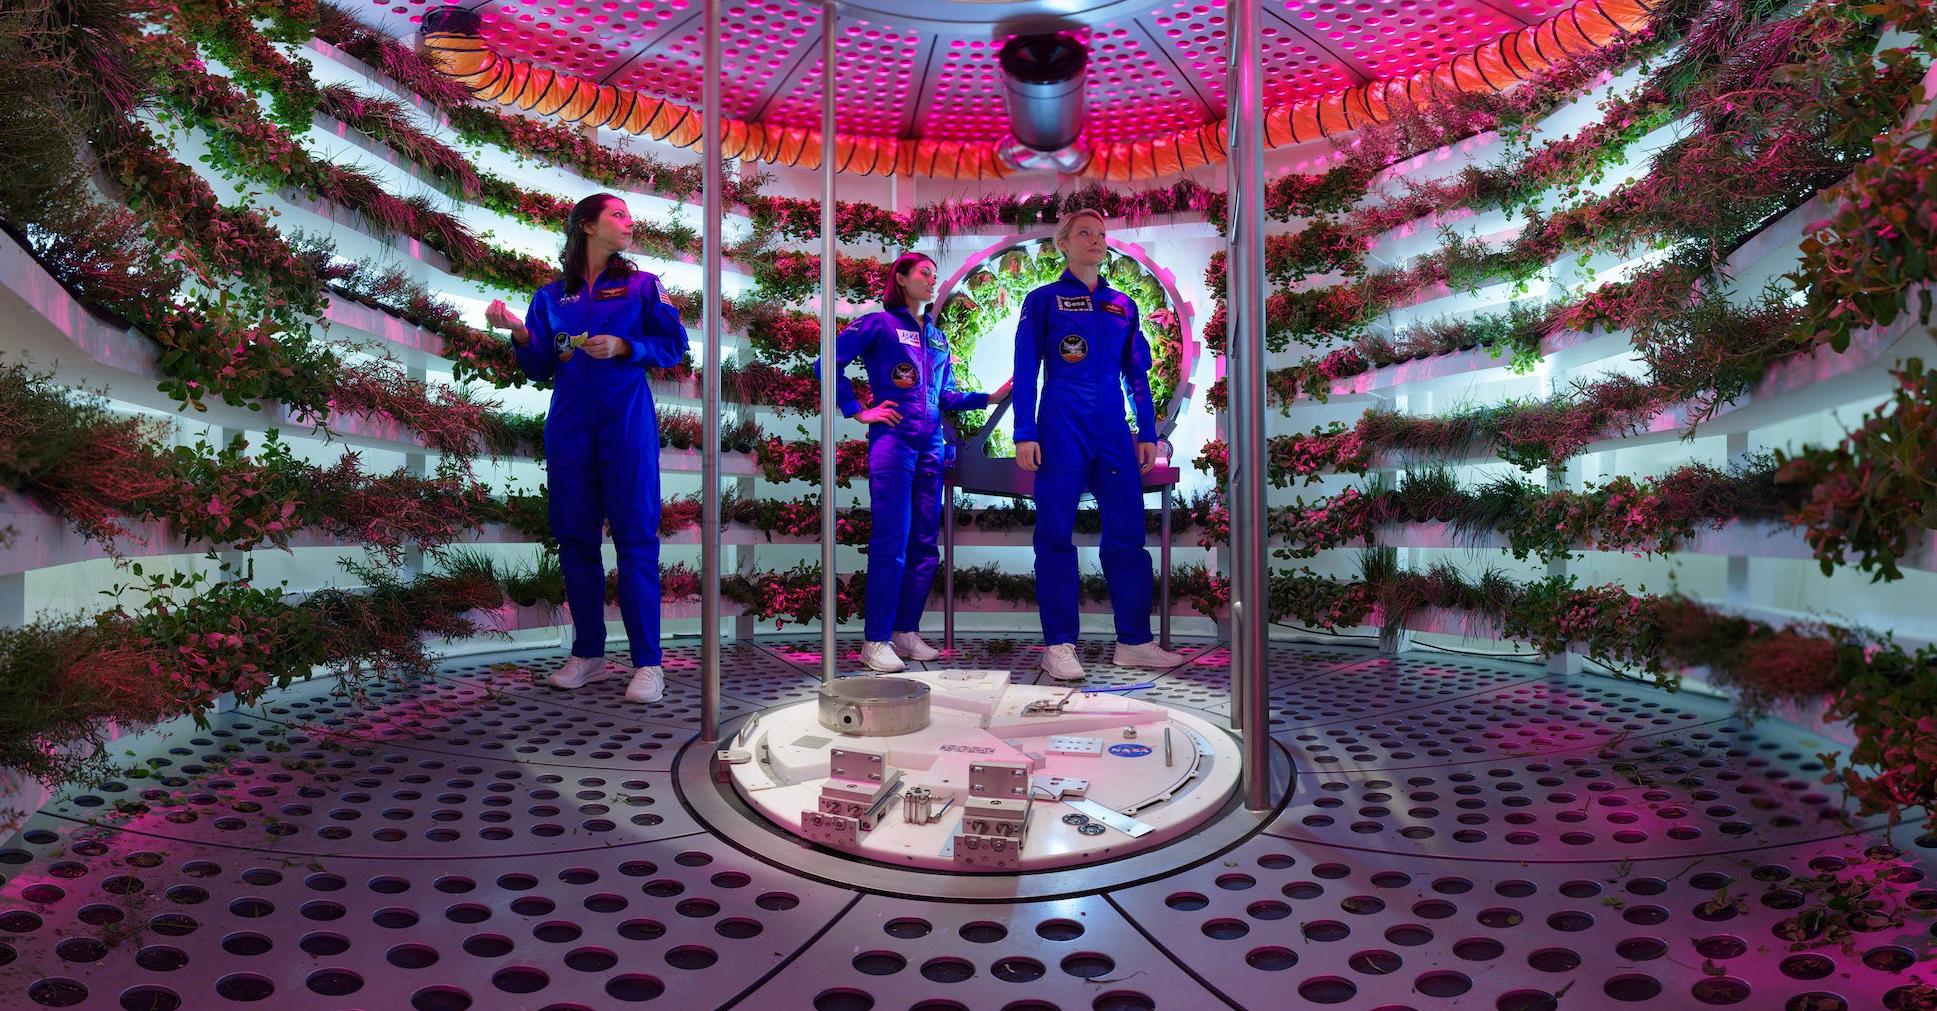 香港太空館天象廳五月一日起放映全新天象節目《火星千日行》，讓觀眾踏上虛擬旅程，跟隨太空人展開為期1,001日的首次載人登陸火星虛構任務，一同探索這紅色行星。圖示節目中飛船上的水耕種植系統，是太空人重要的糧食來源。（圖片來源：© Mirage3D）